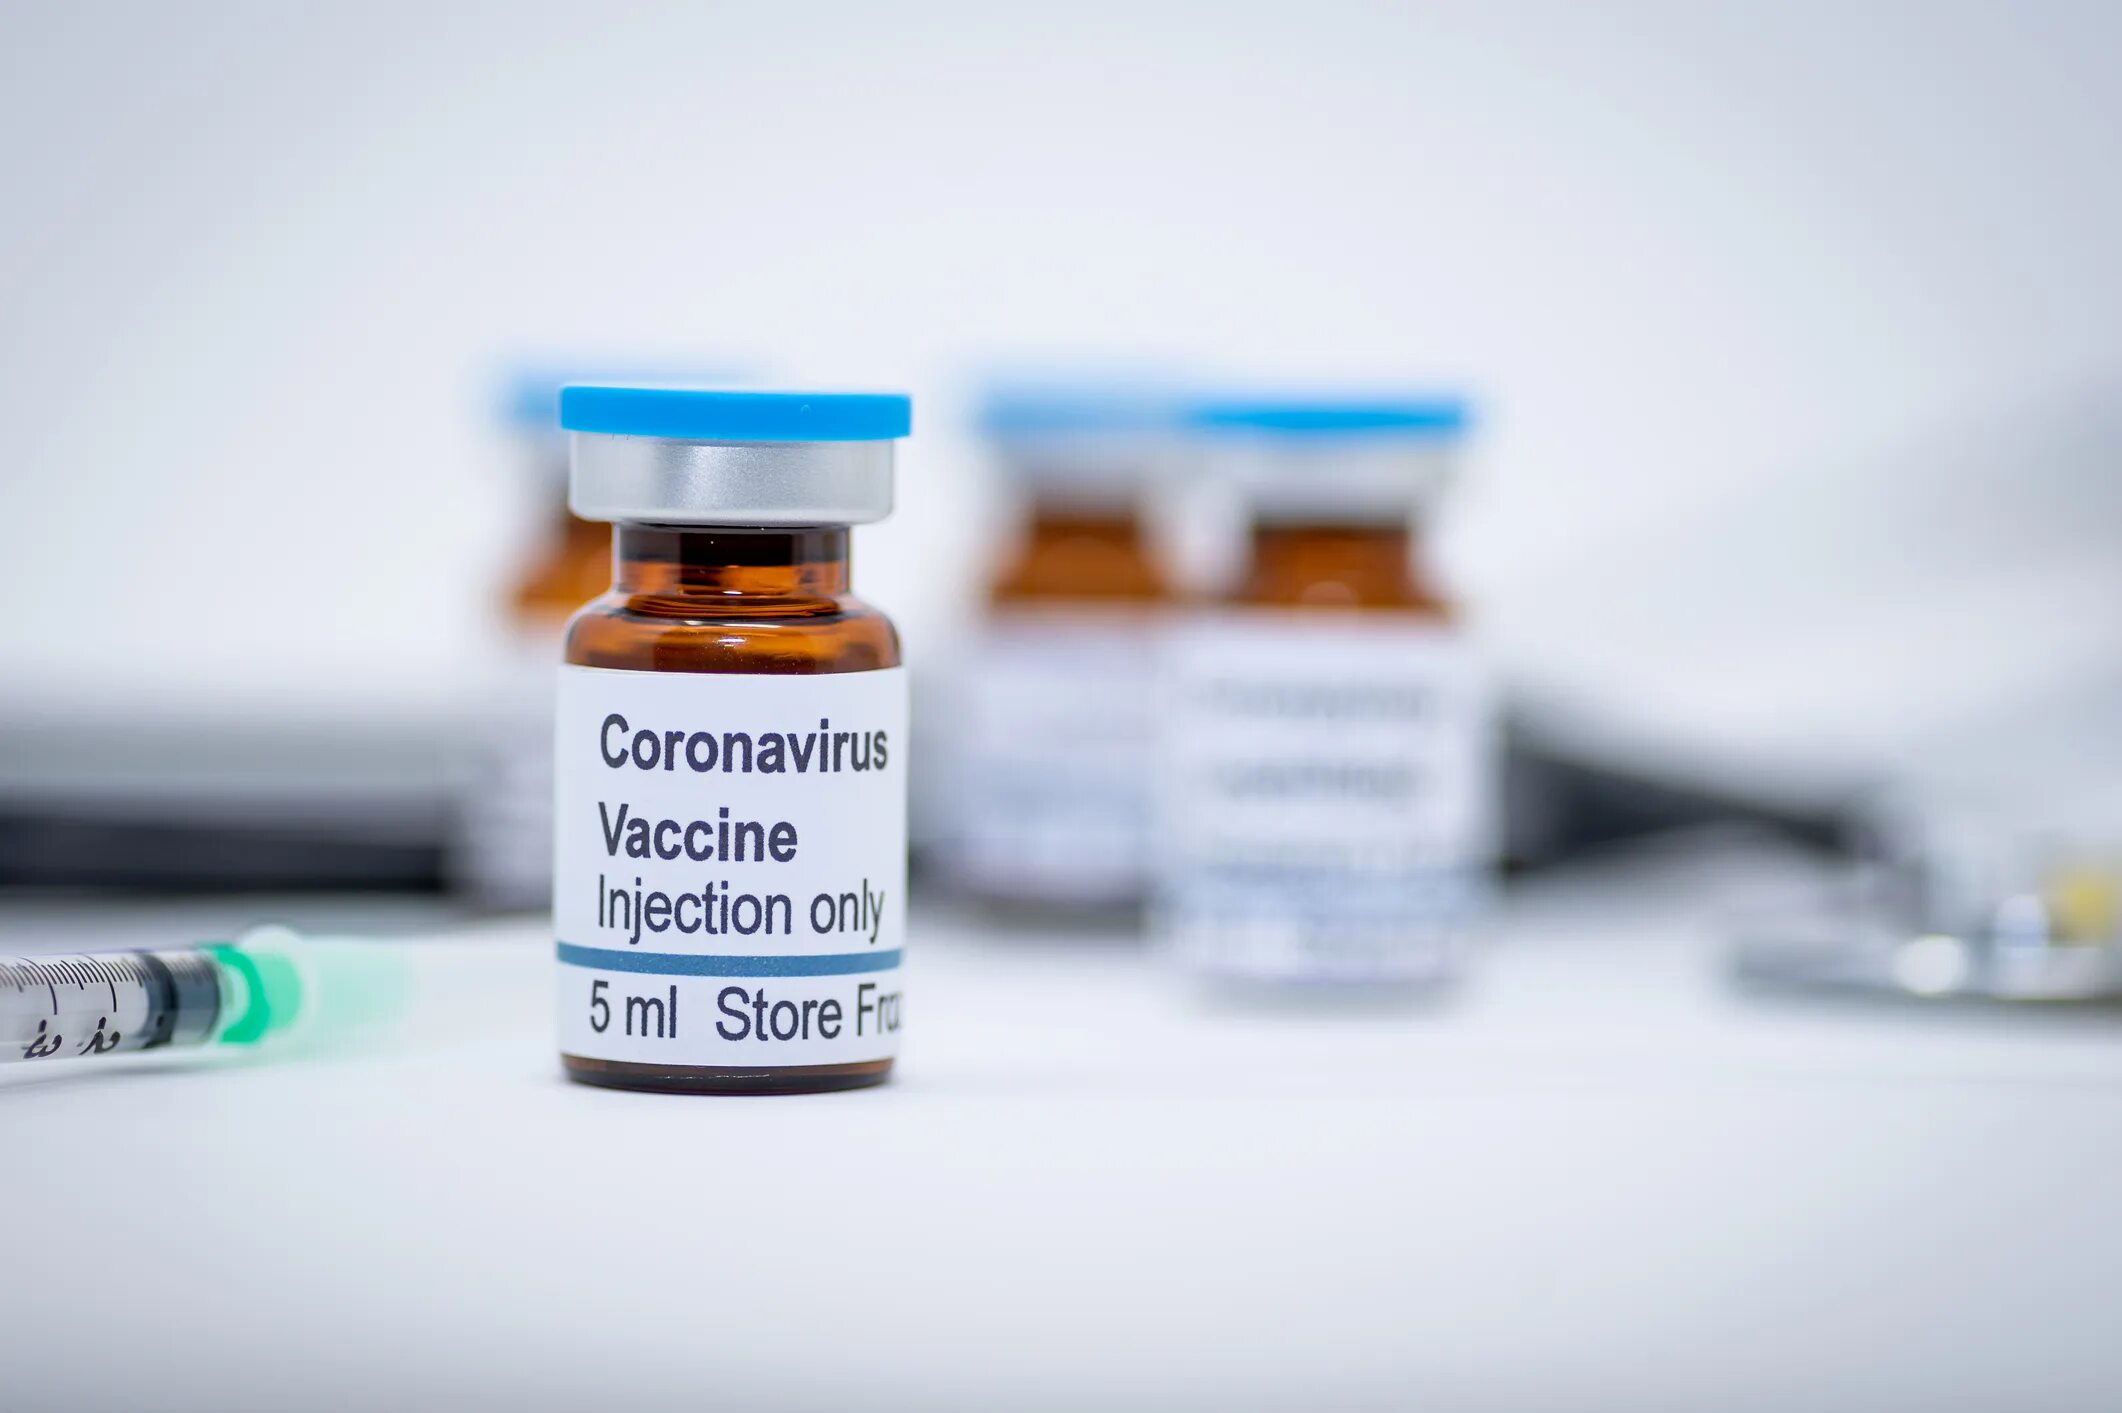 Virus vaccine. Covid вакцина. Vaccine Covid-19. Вакцина против коронавируса. Вакциная отткороновируса.